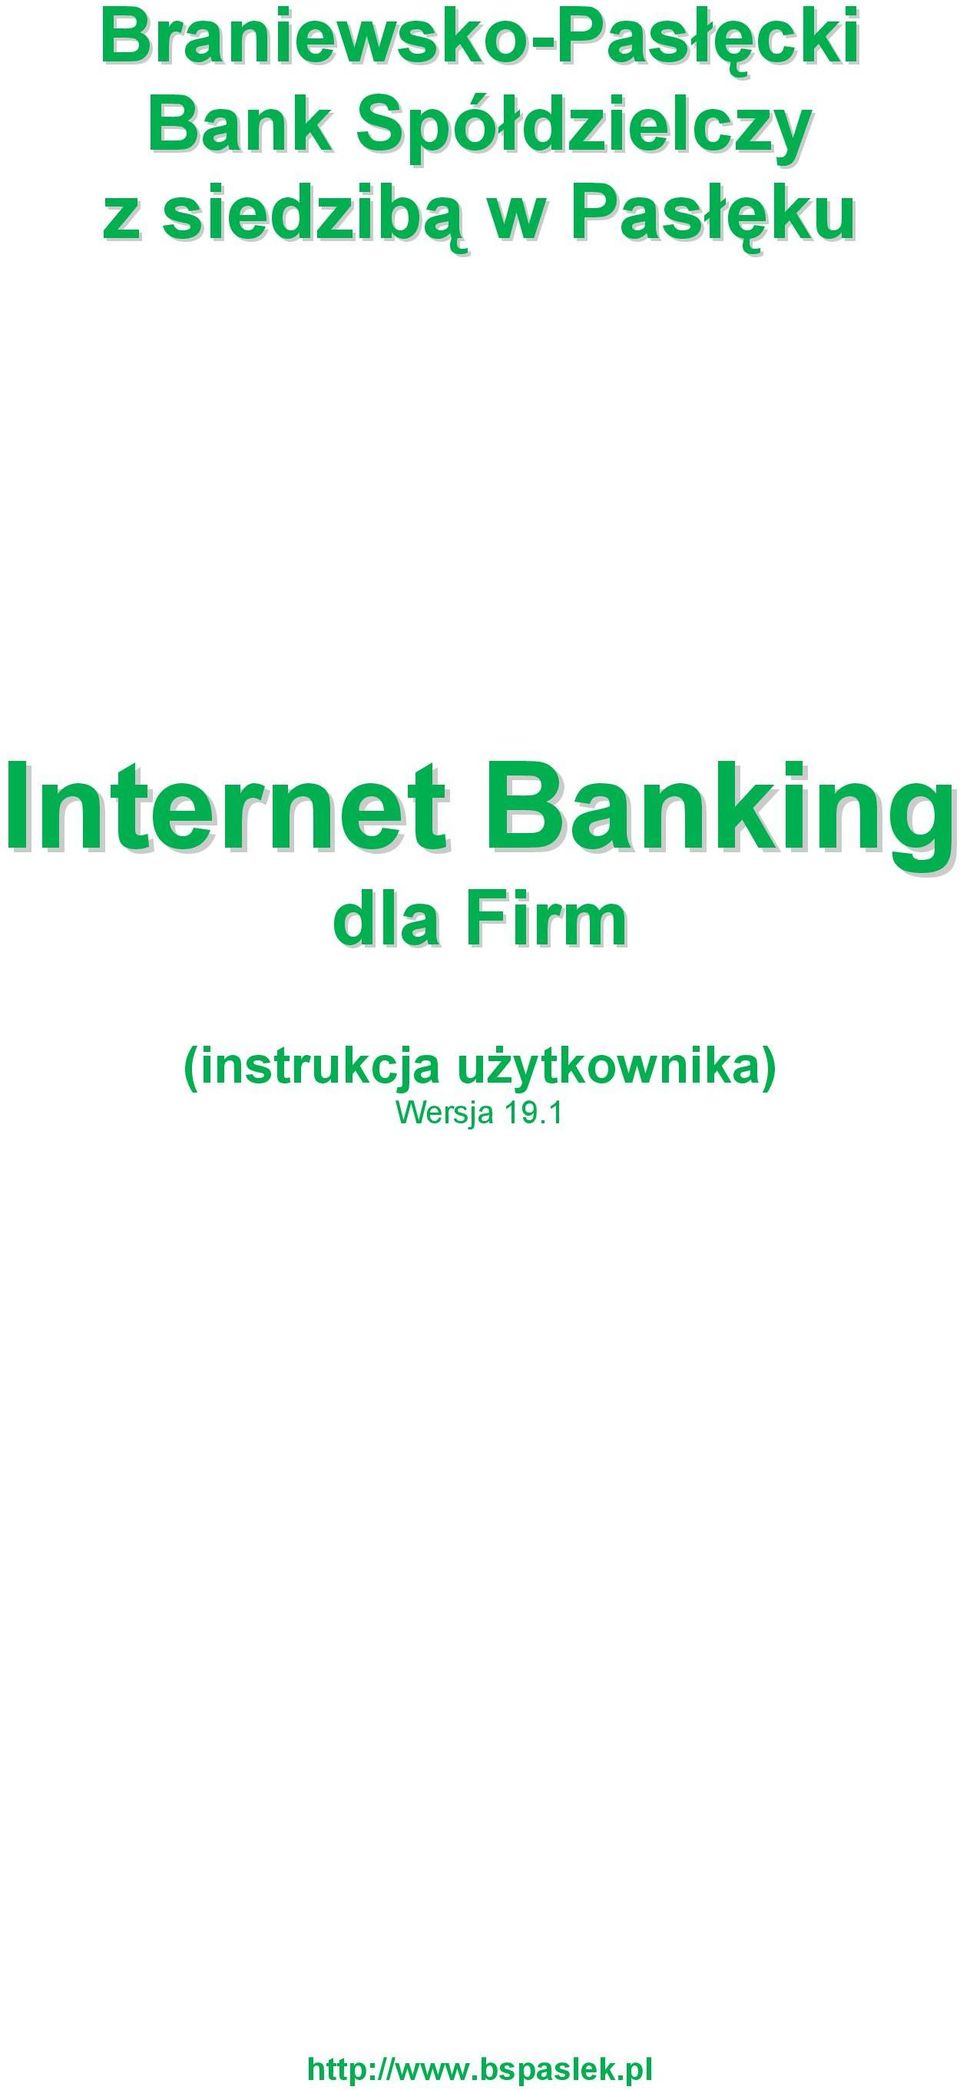 Internet Banking dla Firm